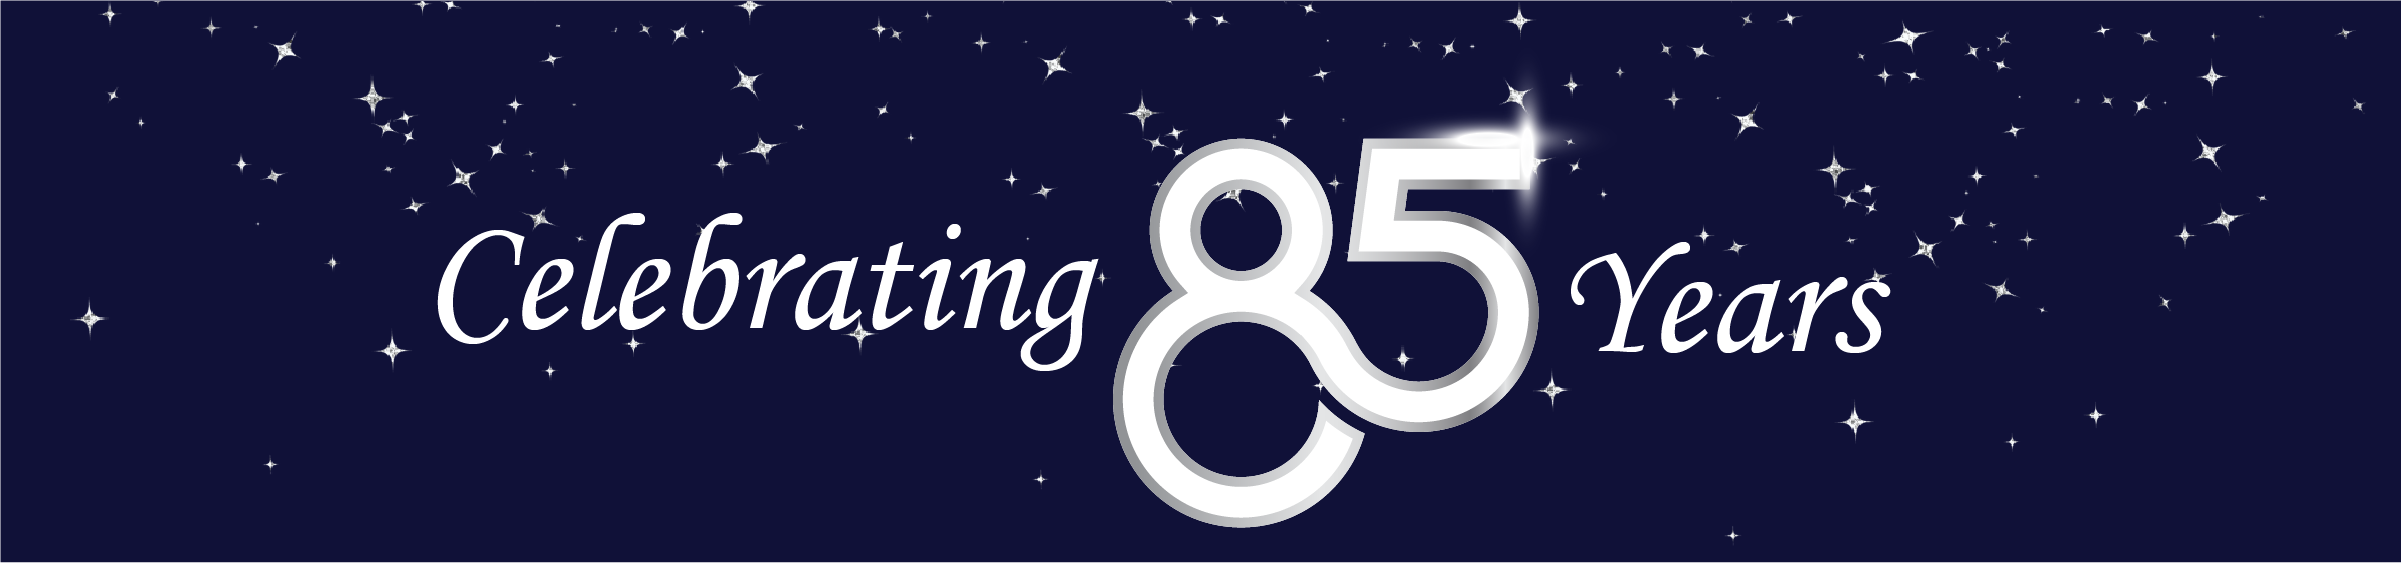 Celebrating 85 Years